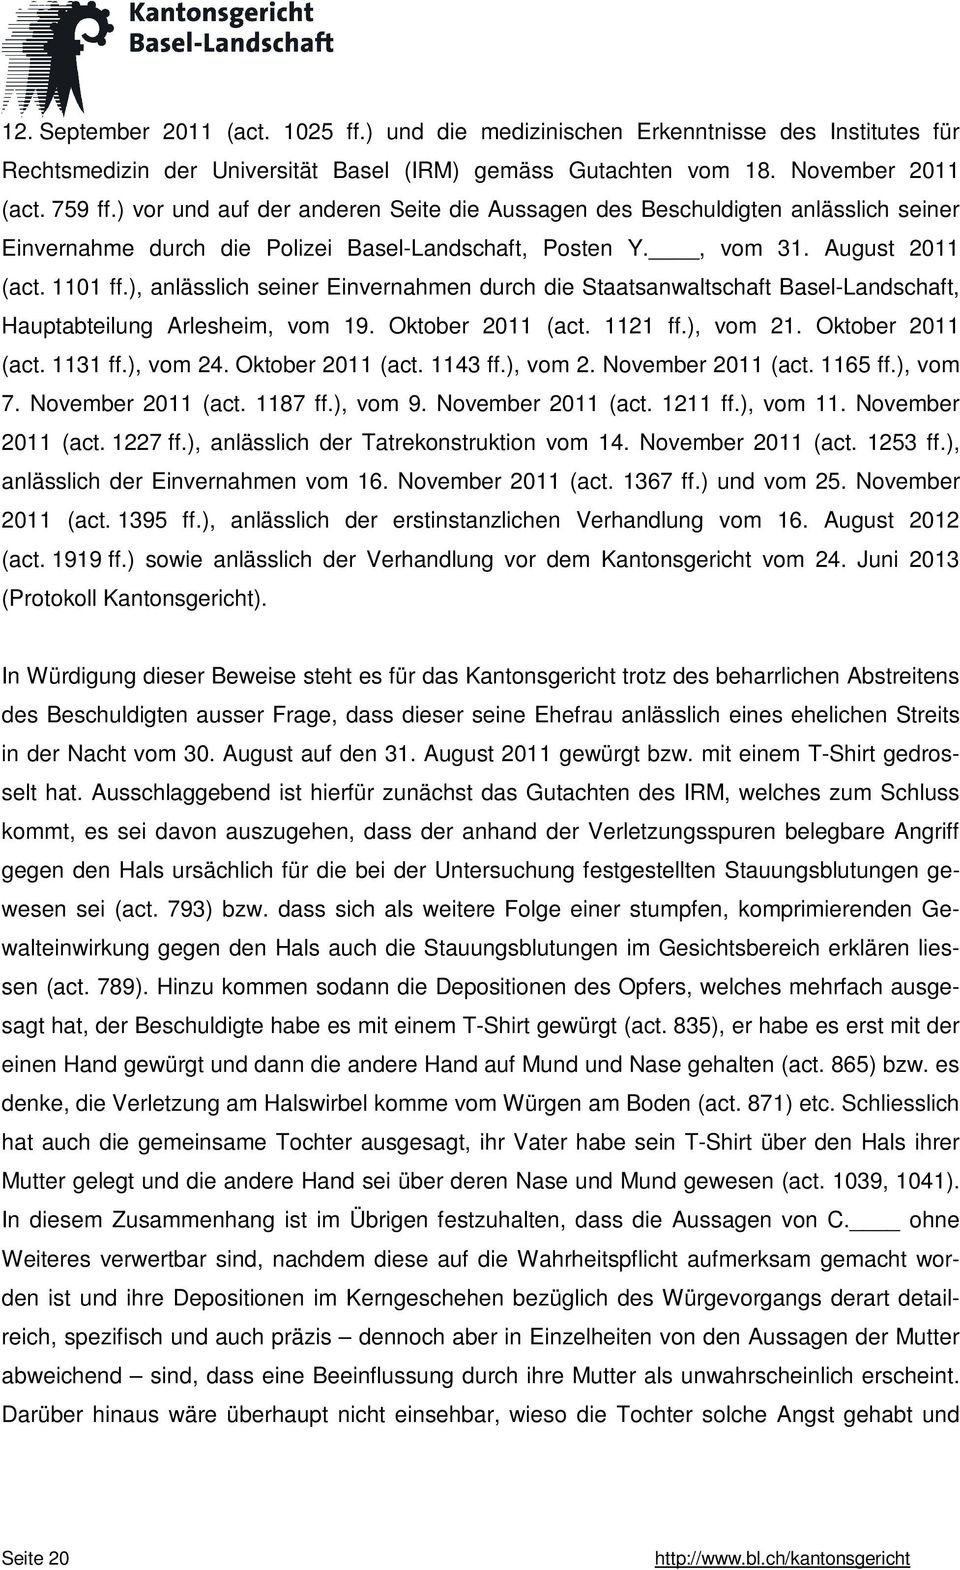 ), anlässlich seiner Einvernahmen durch die Staatsanwaltschaft Basel-Landschaft, Hauptabteilung Arlesheim, vom 19. Oktober 2011 (act. 1121 ff.), vom 21. Oktober 2011 (act. 1131 ff.), vom 24.